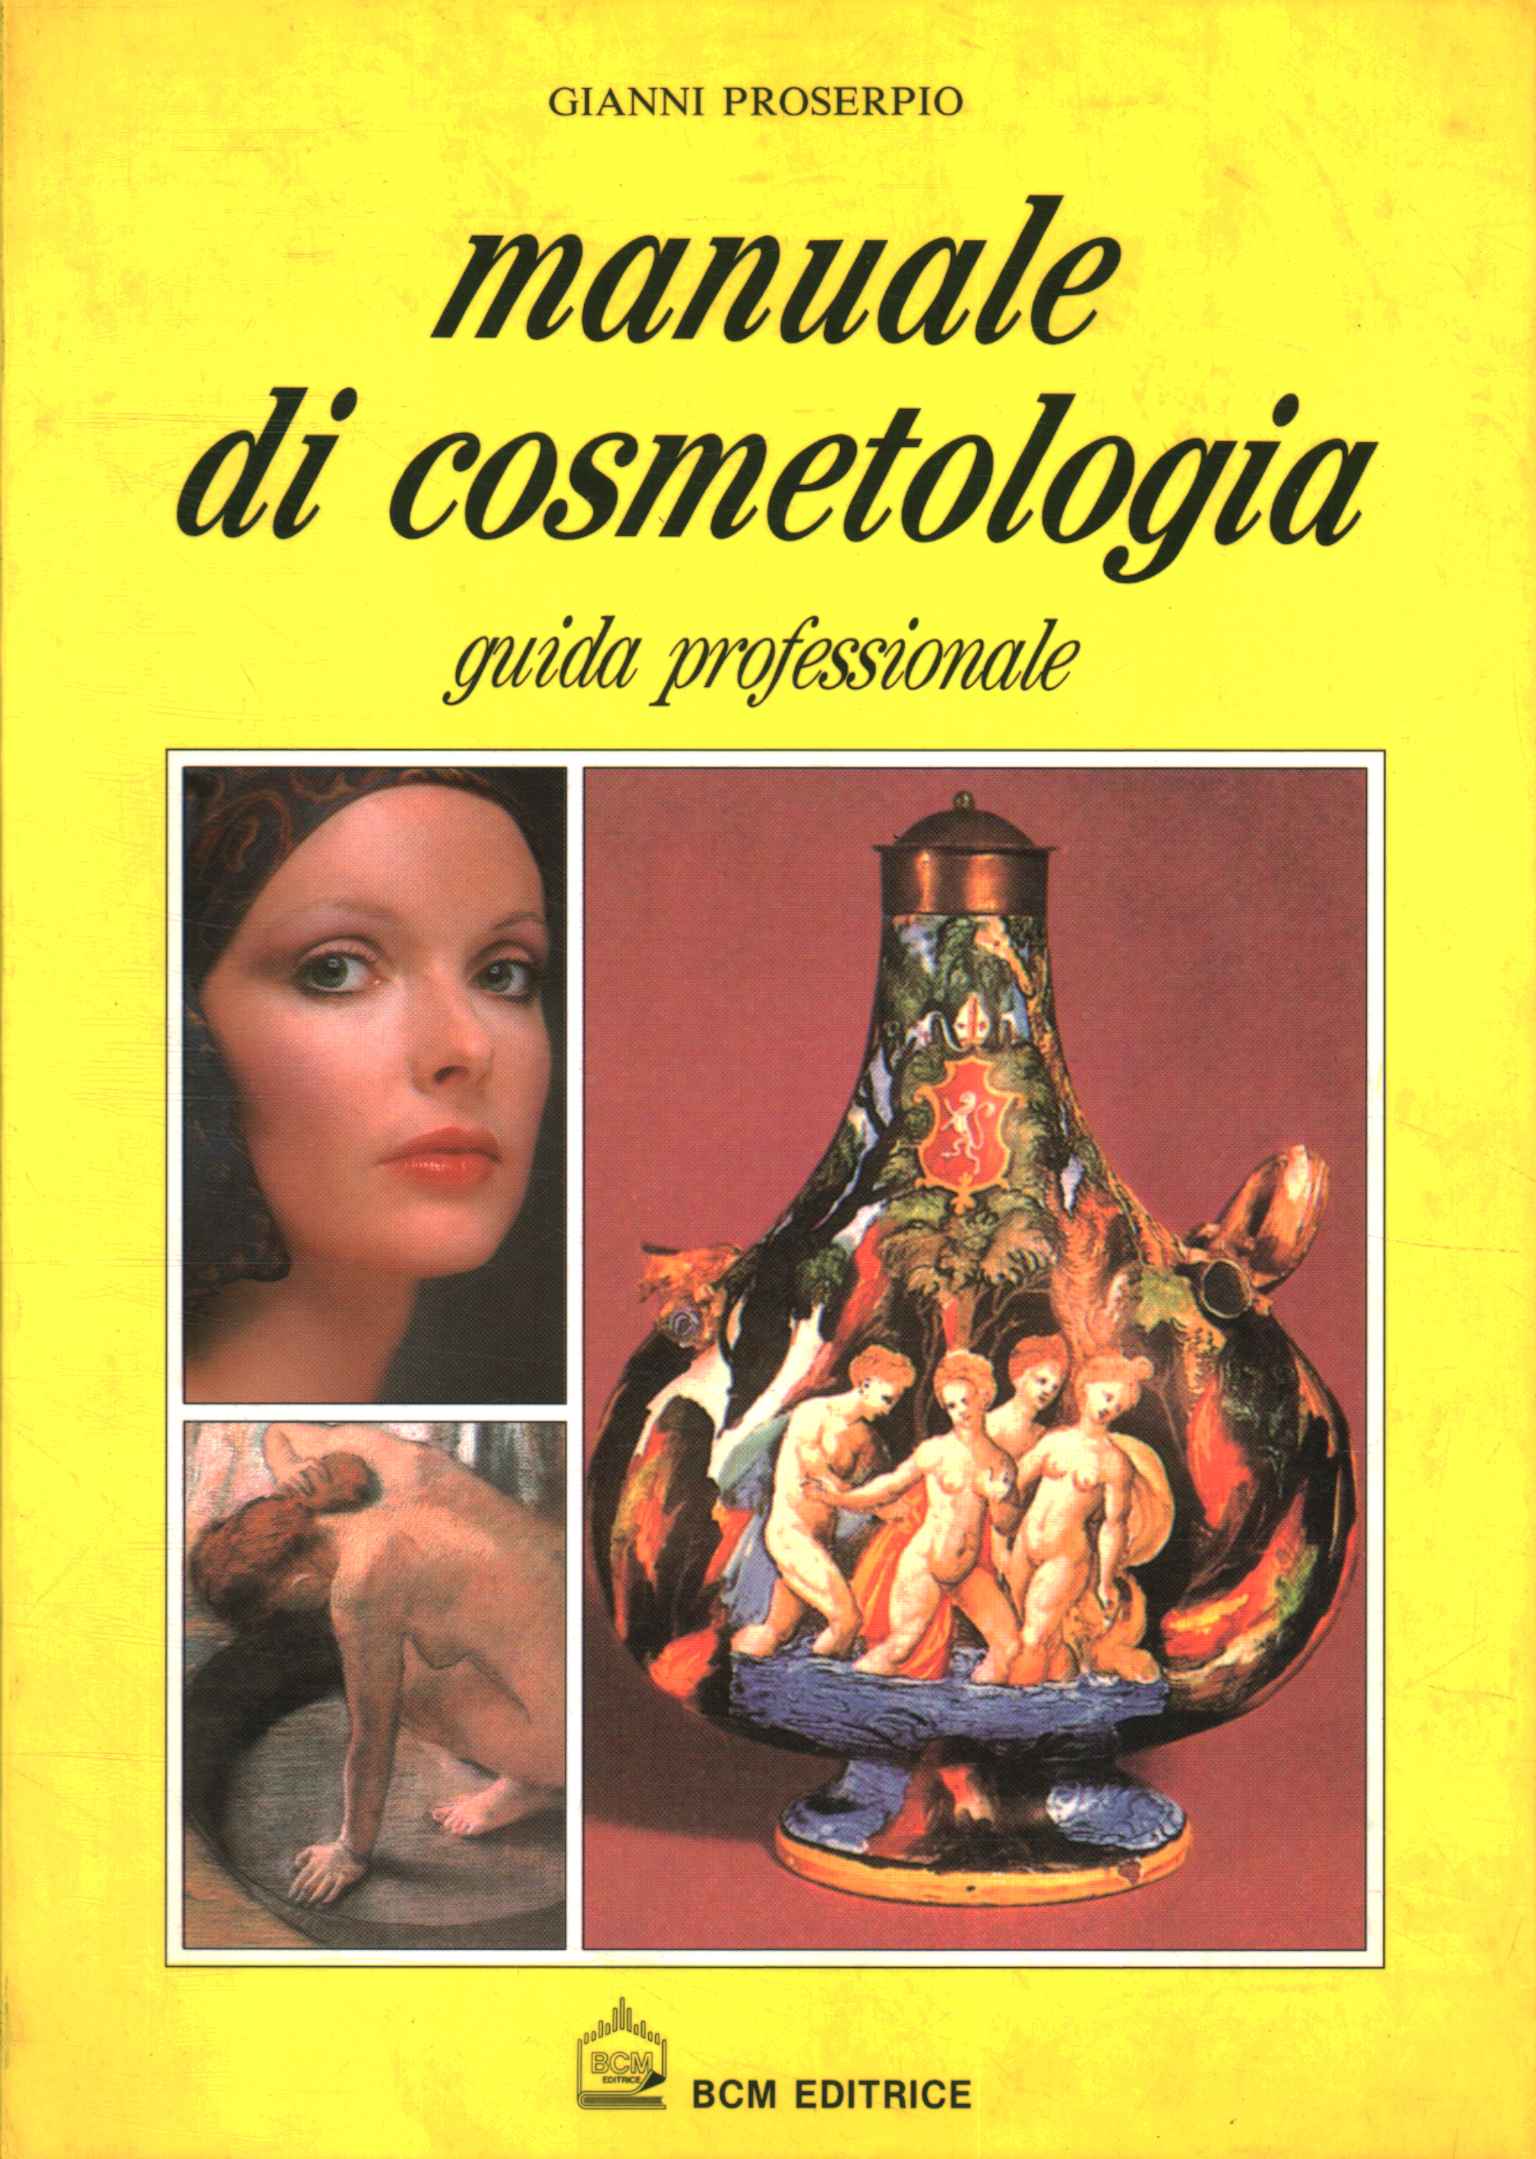 manual de cosmetología